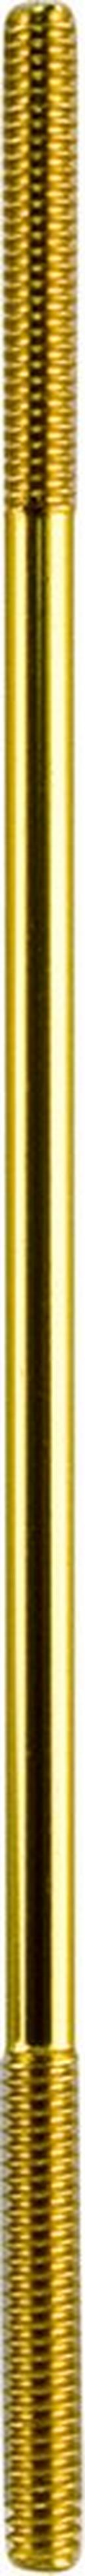 Brass Float Rod